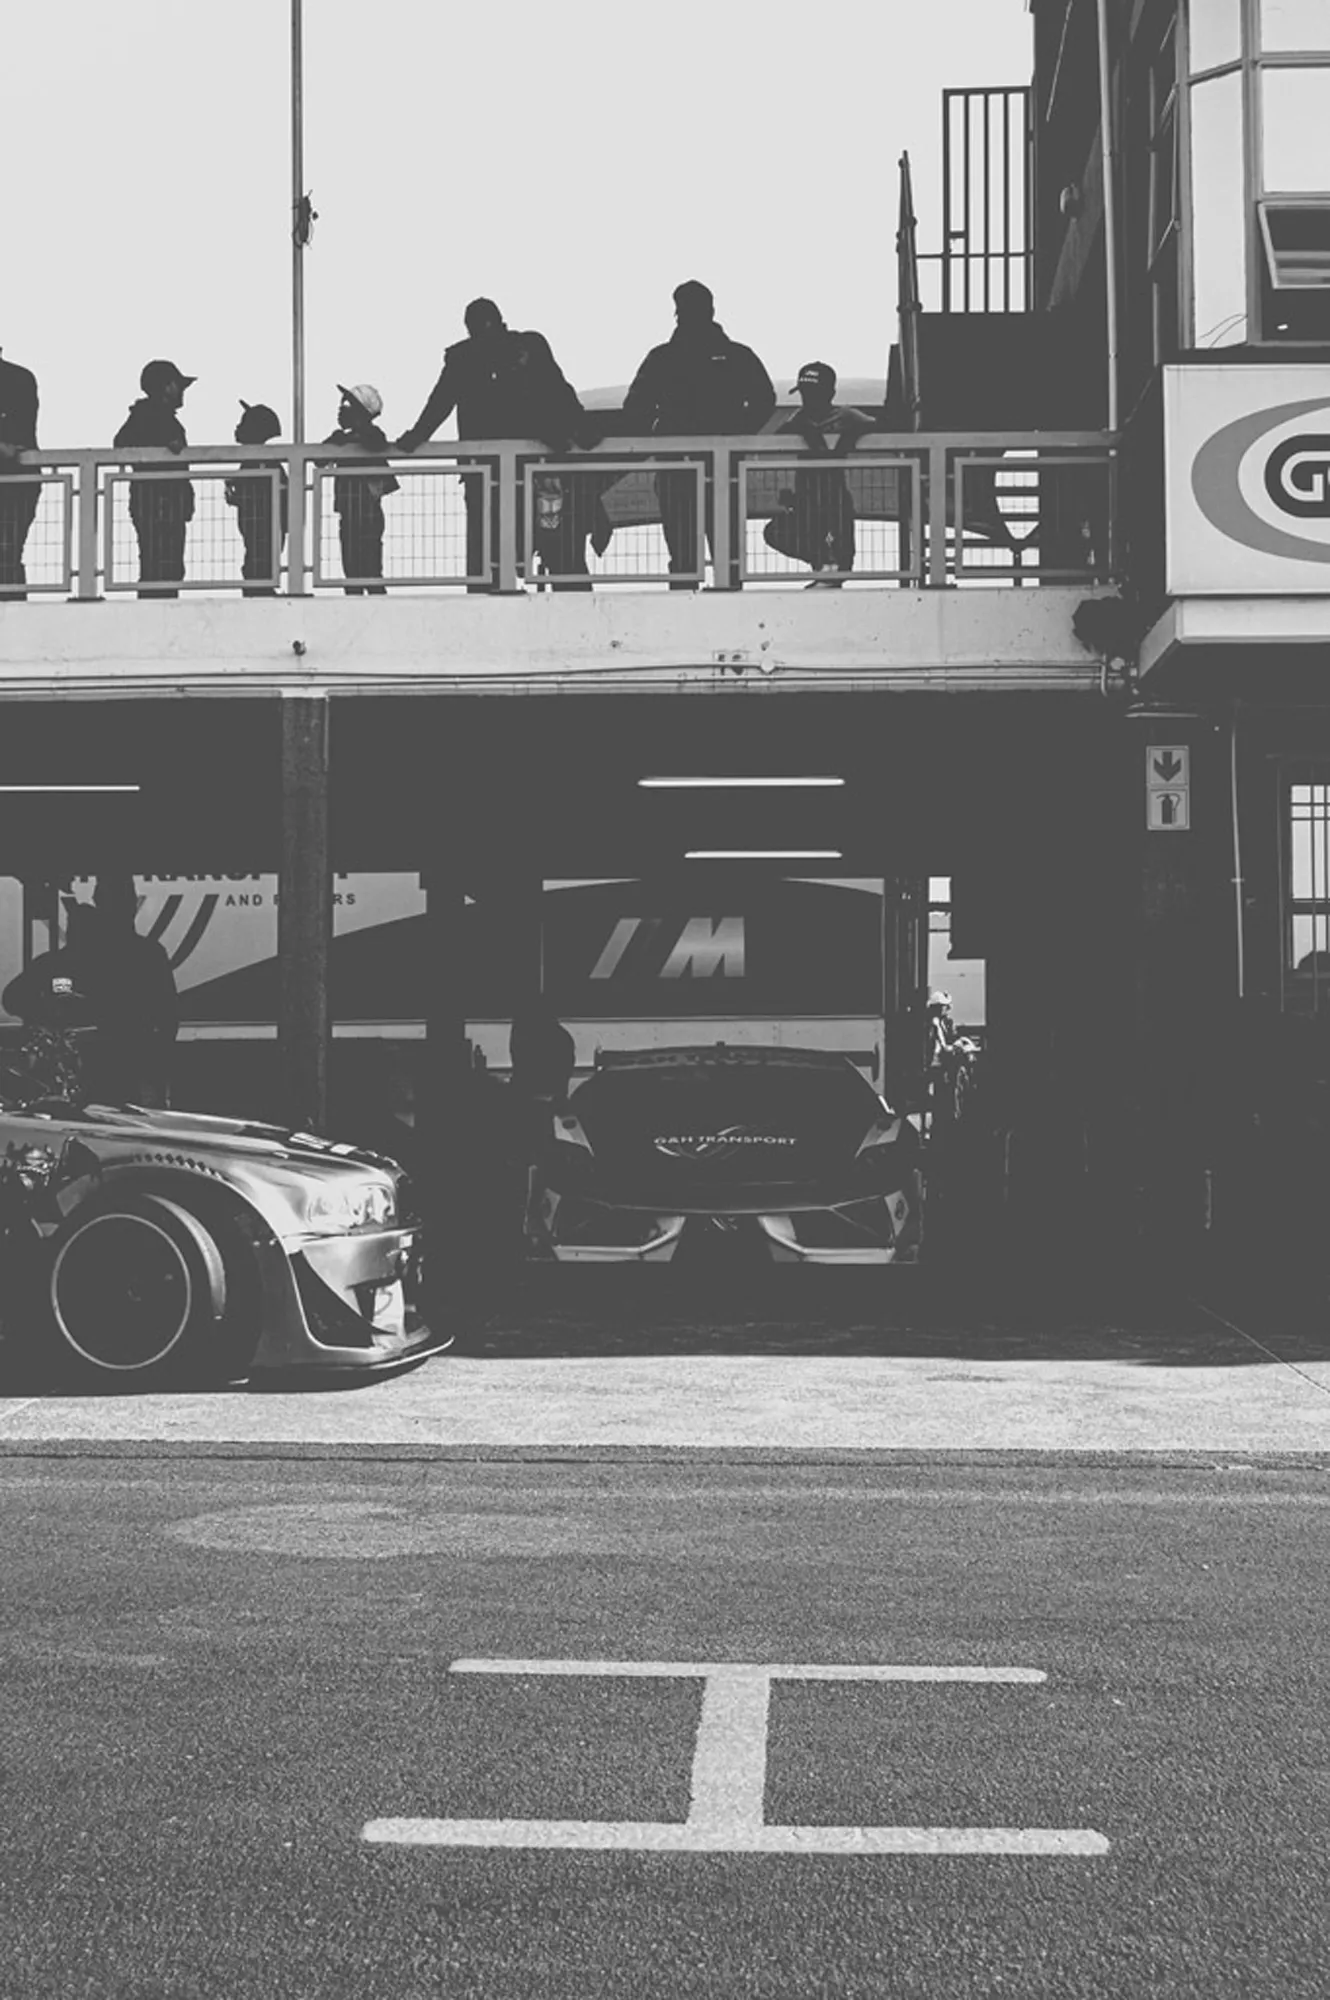 2019-07-27 - Zwartkops Raceway - Race cars in garage beside track